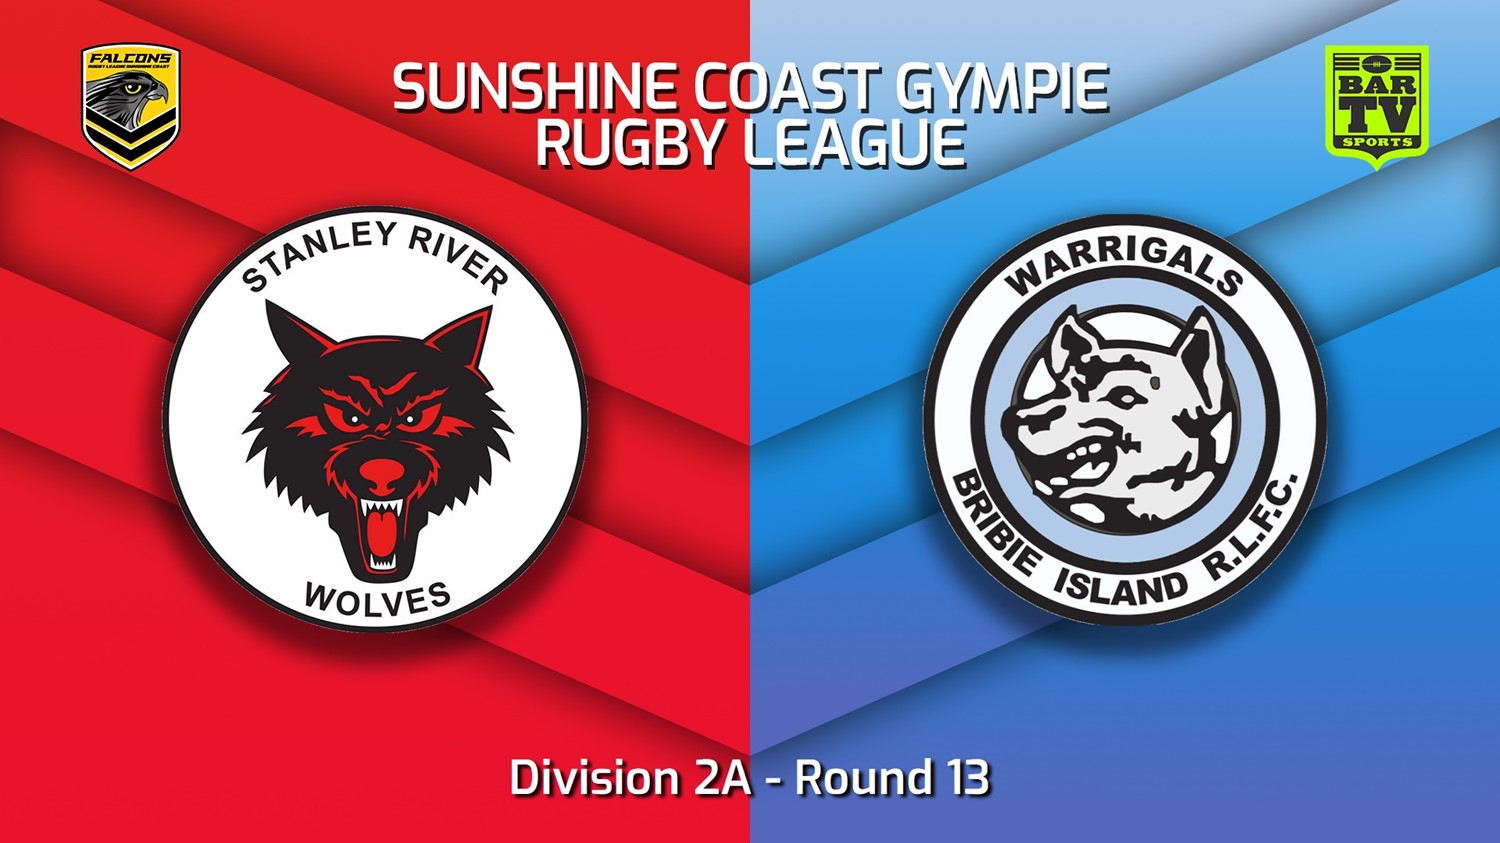 220715-Sunshine Coast RL Round 13 - Division 2A - Stanley River Wolves v Bribie Island Warrigals Slate Image